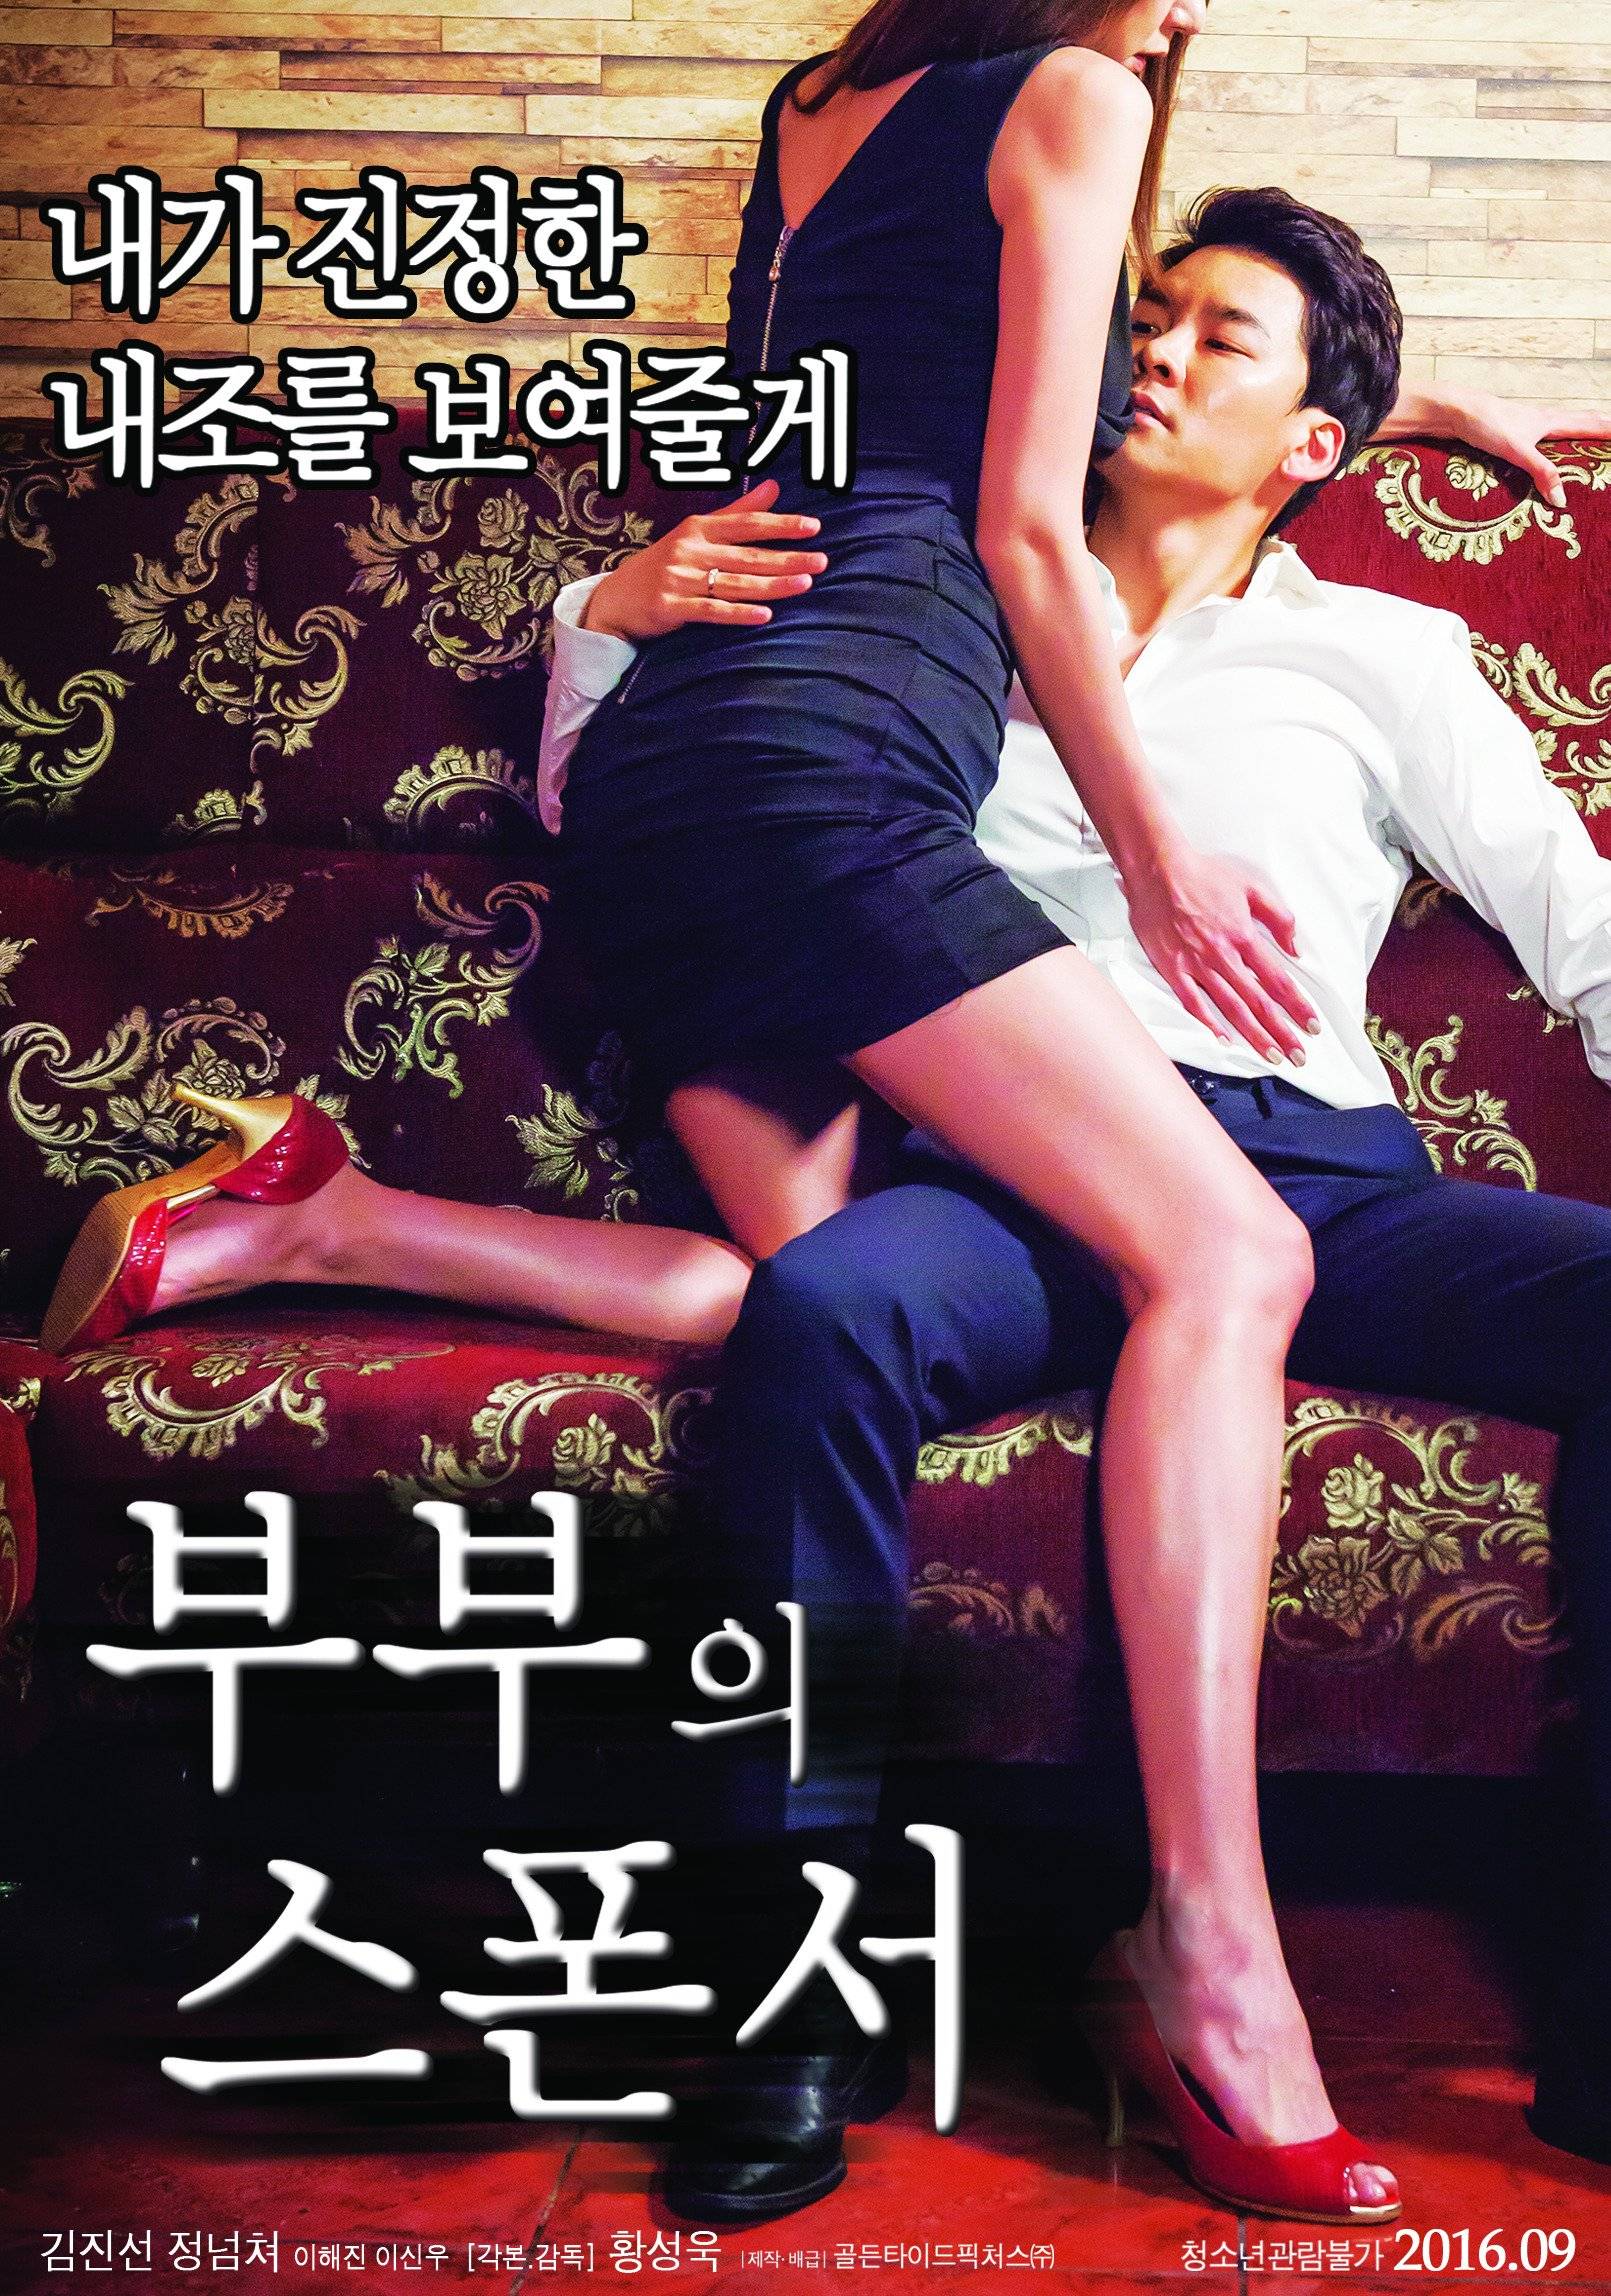 bhavini singh recommends korean adult movie pic